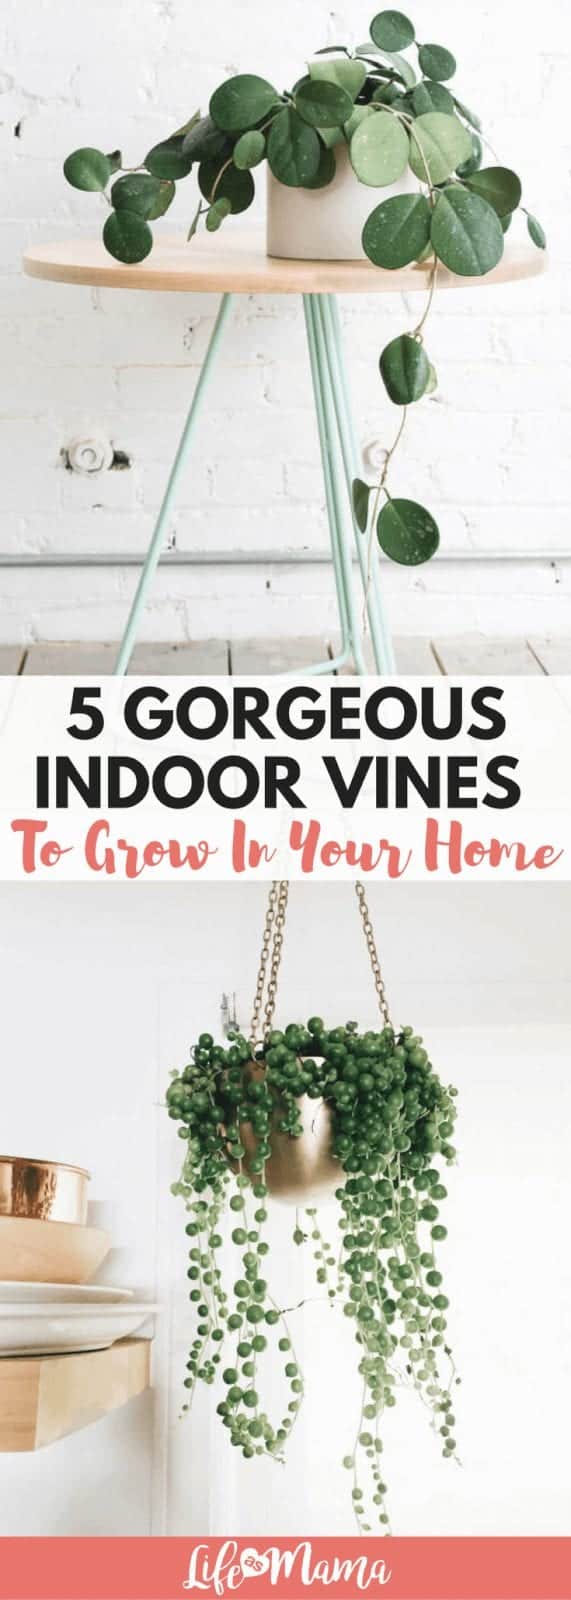 indoor vines